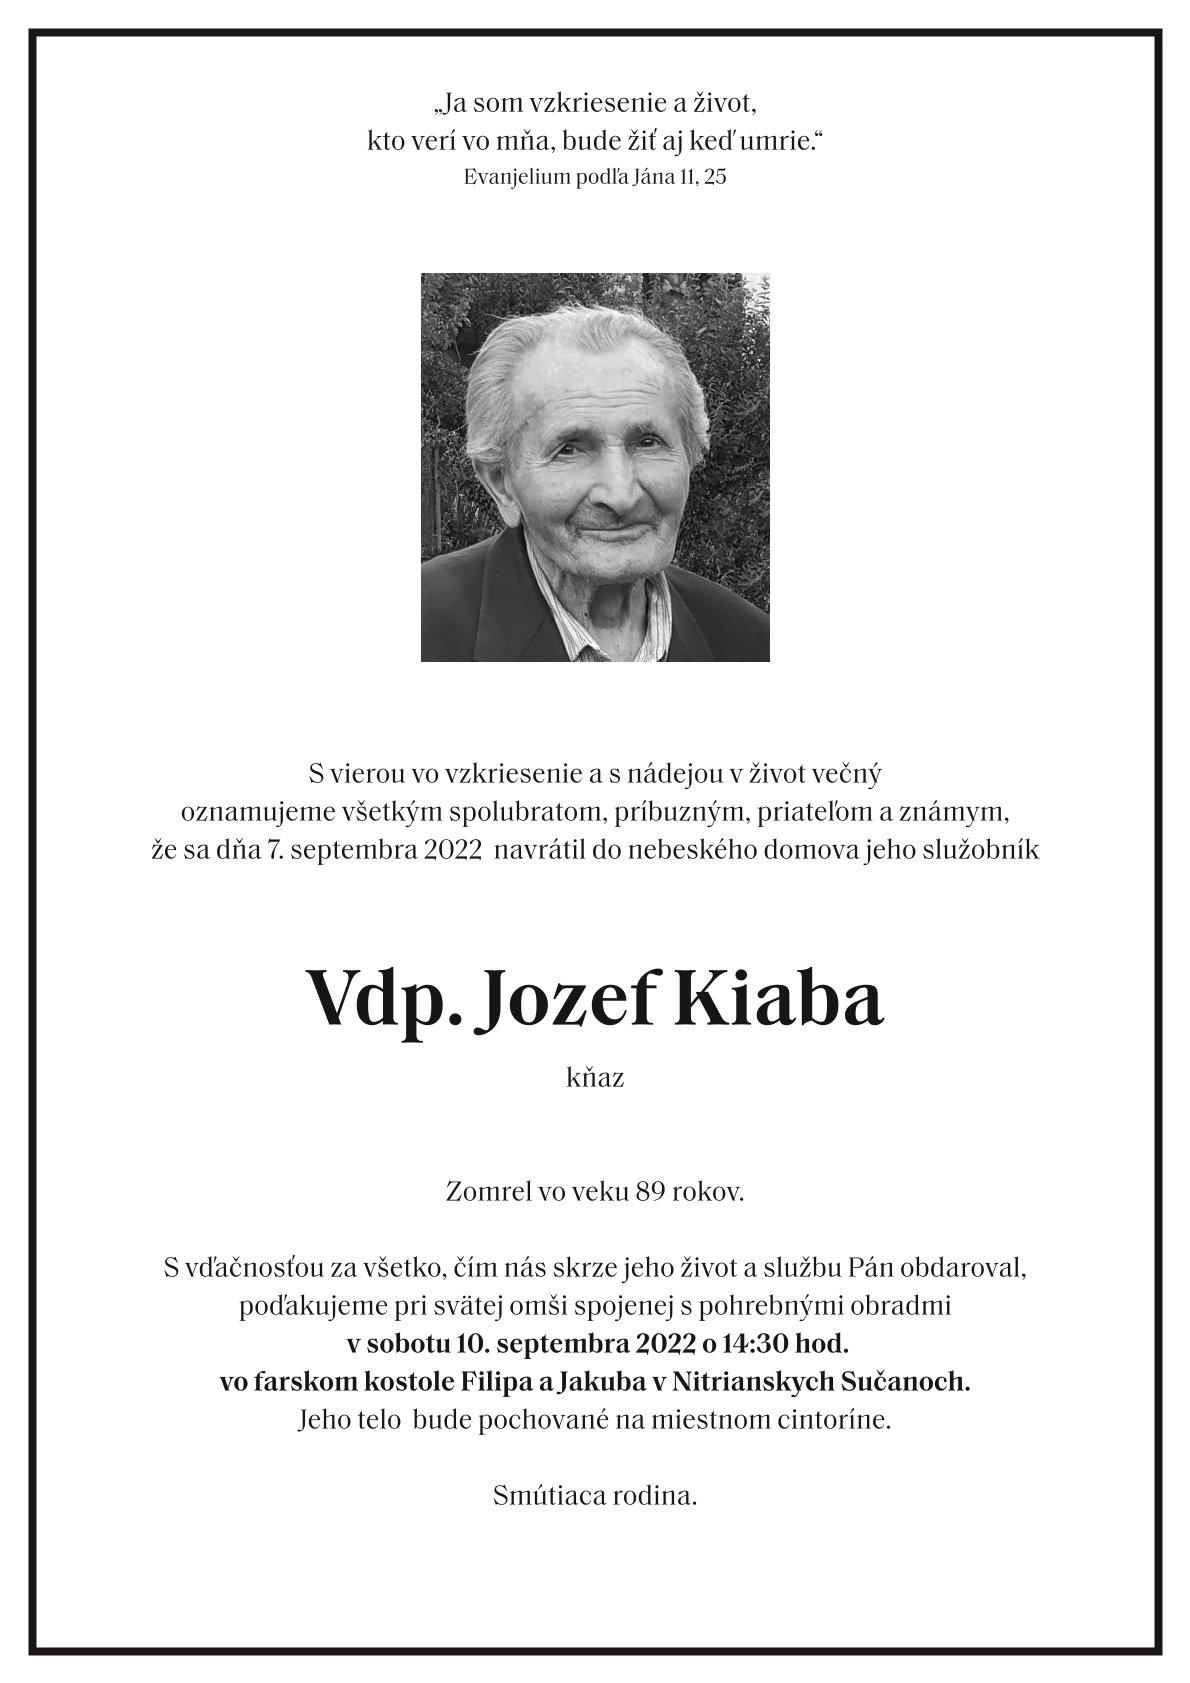 Jozef Kiaba, knaz, parte